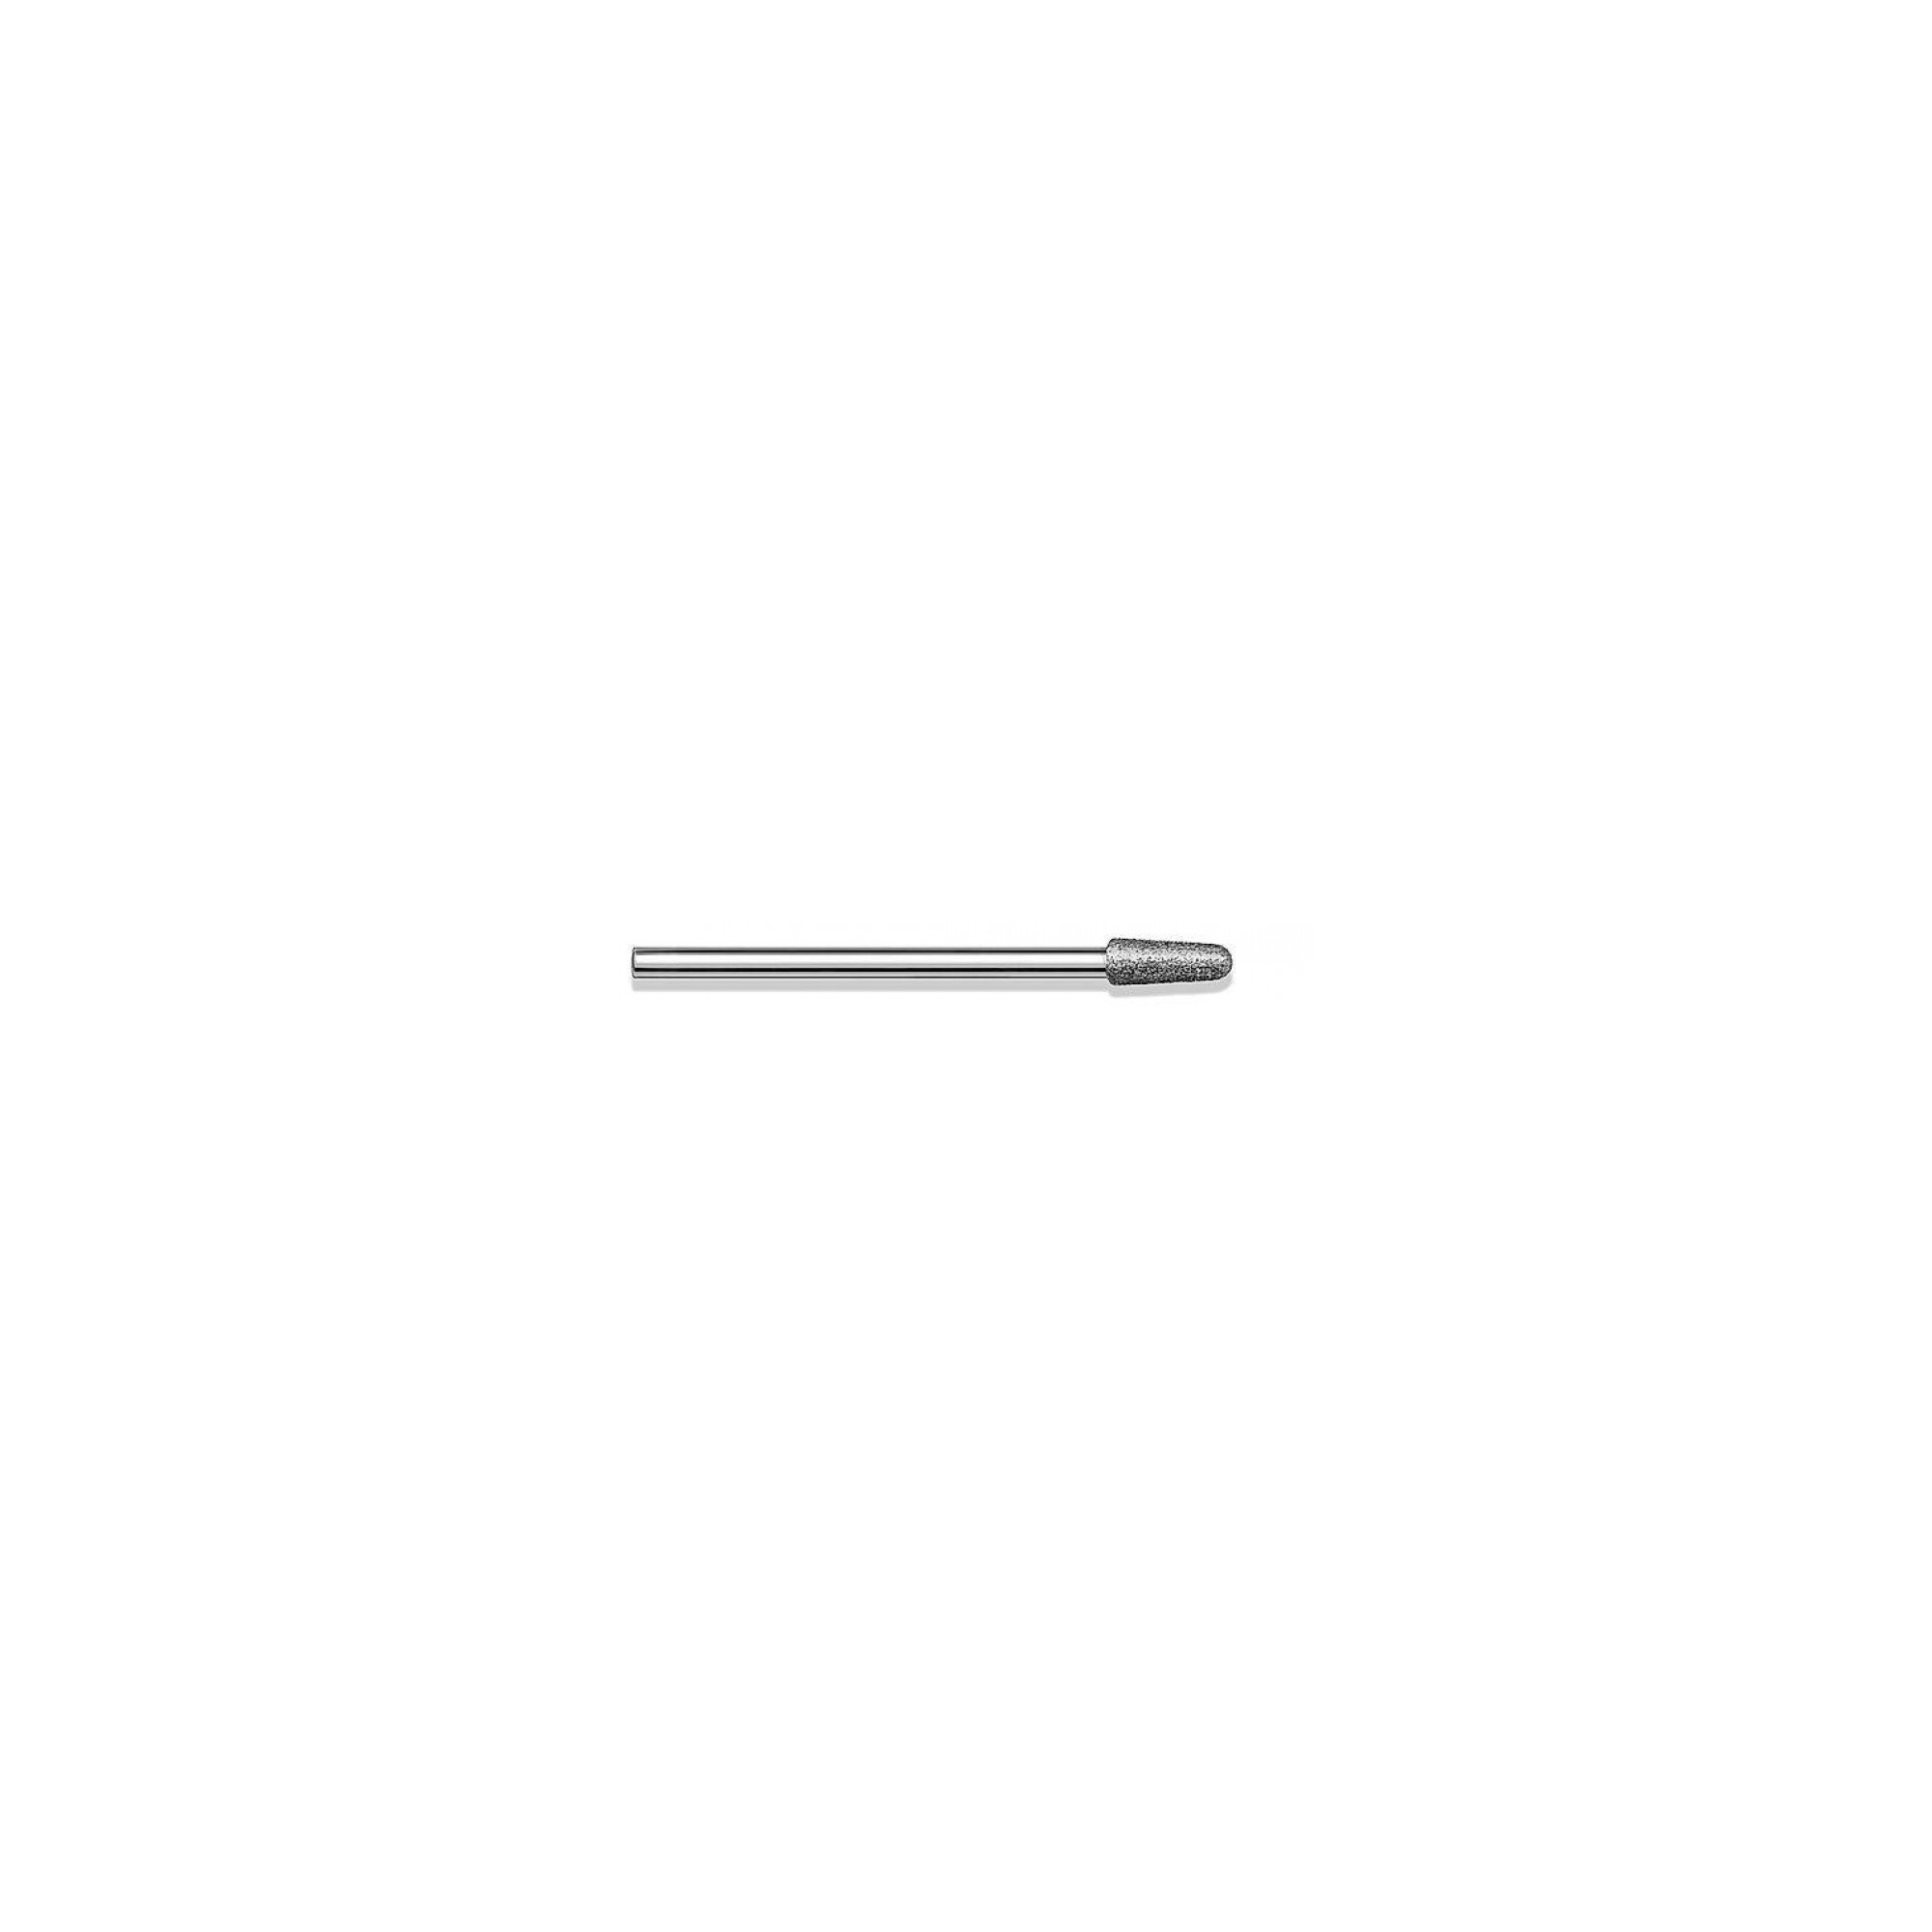 Fraise diamantée standard - Lissage des ongles et des callosités - Grain moyen - ø3,3mm